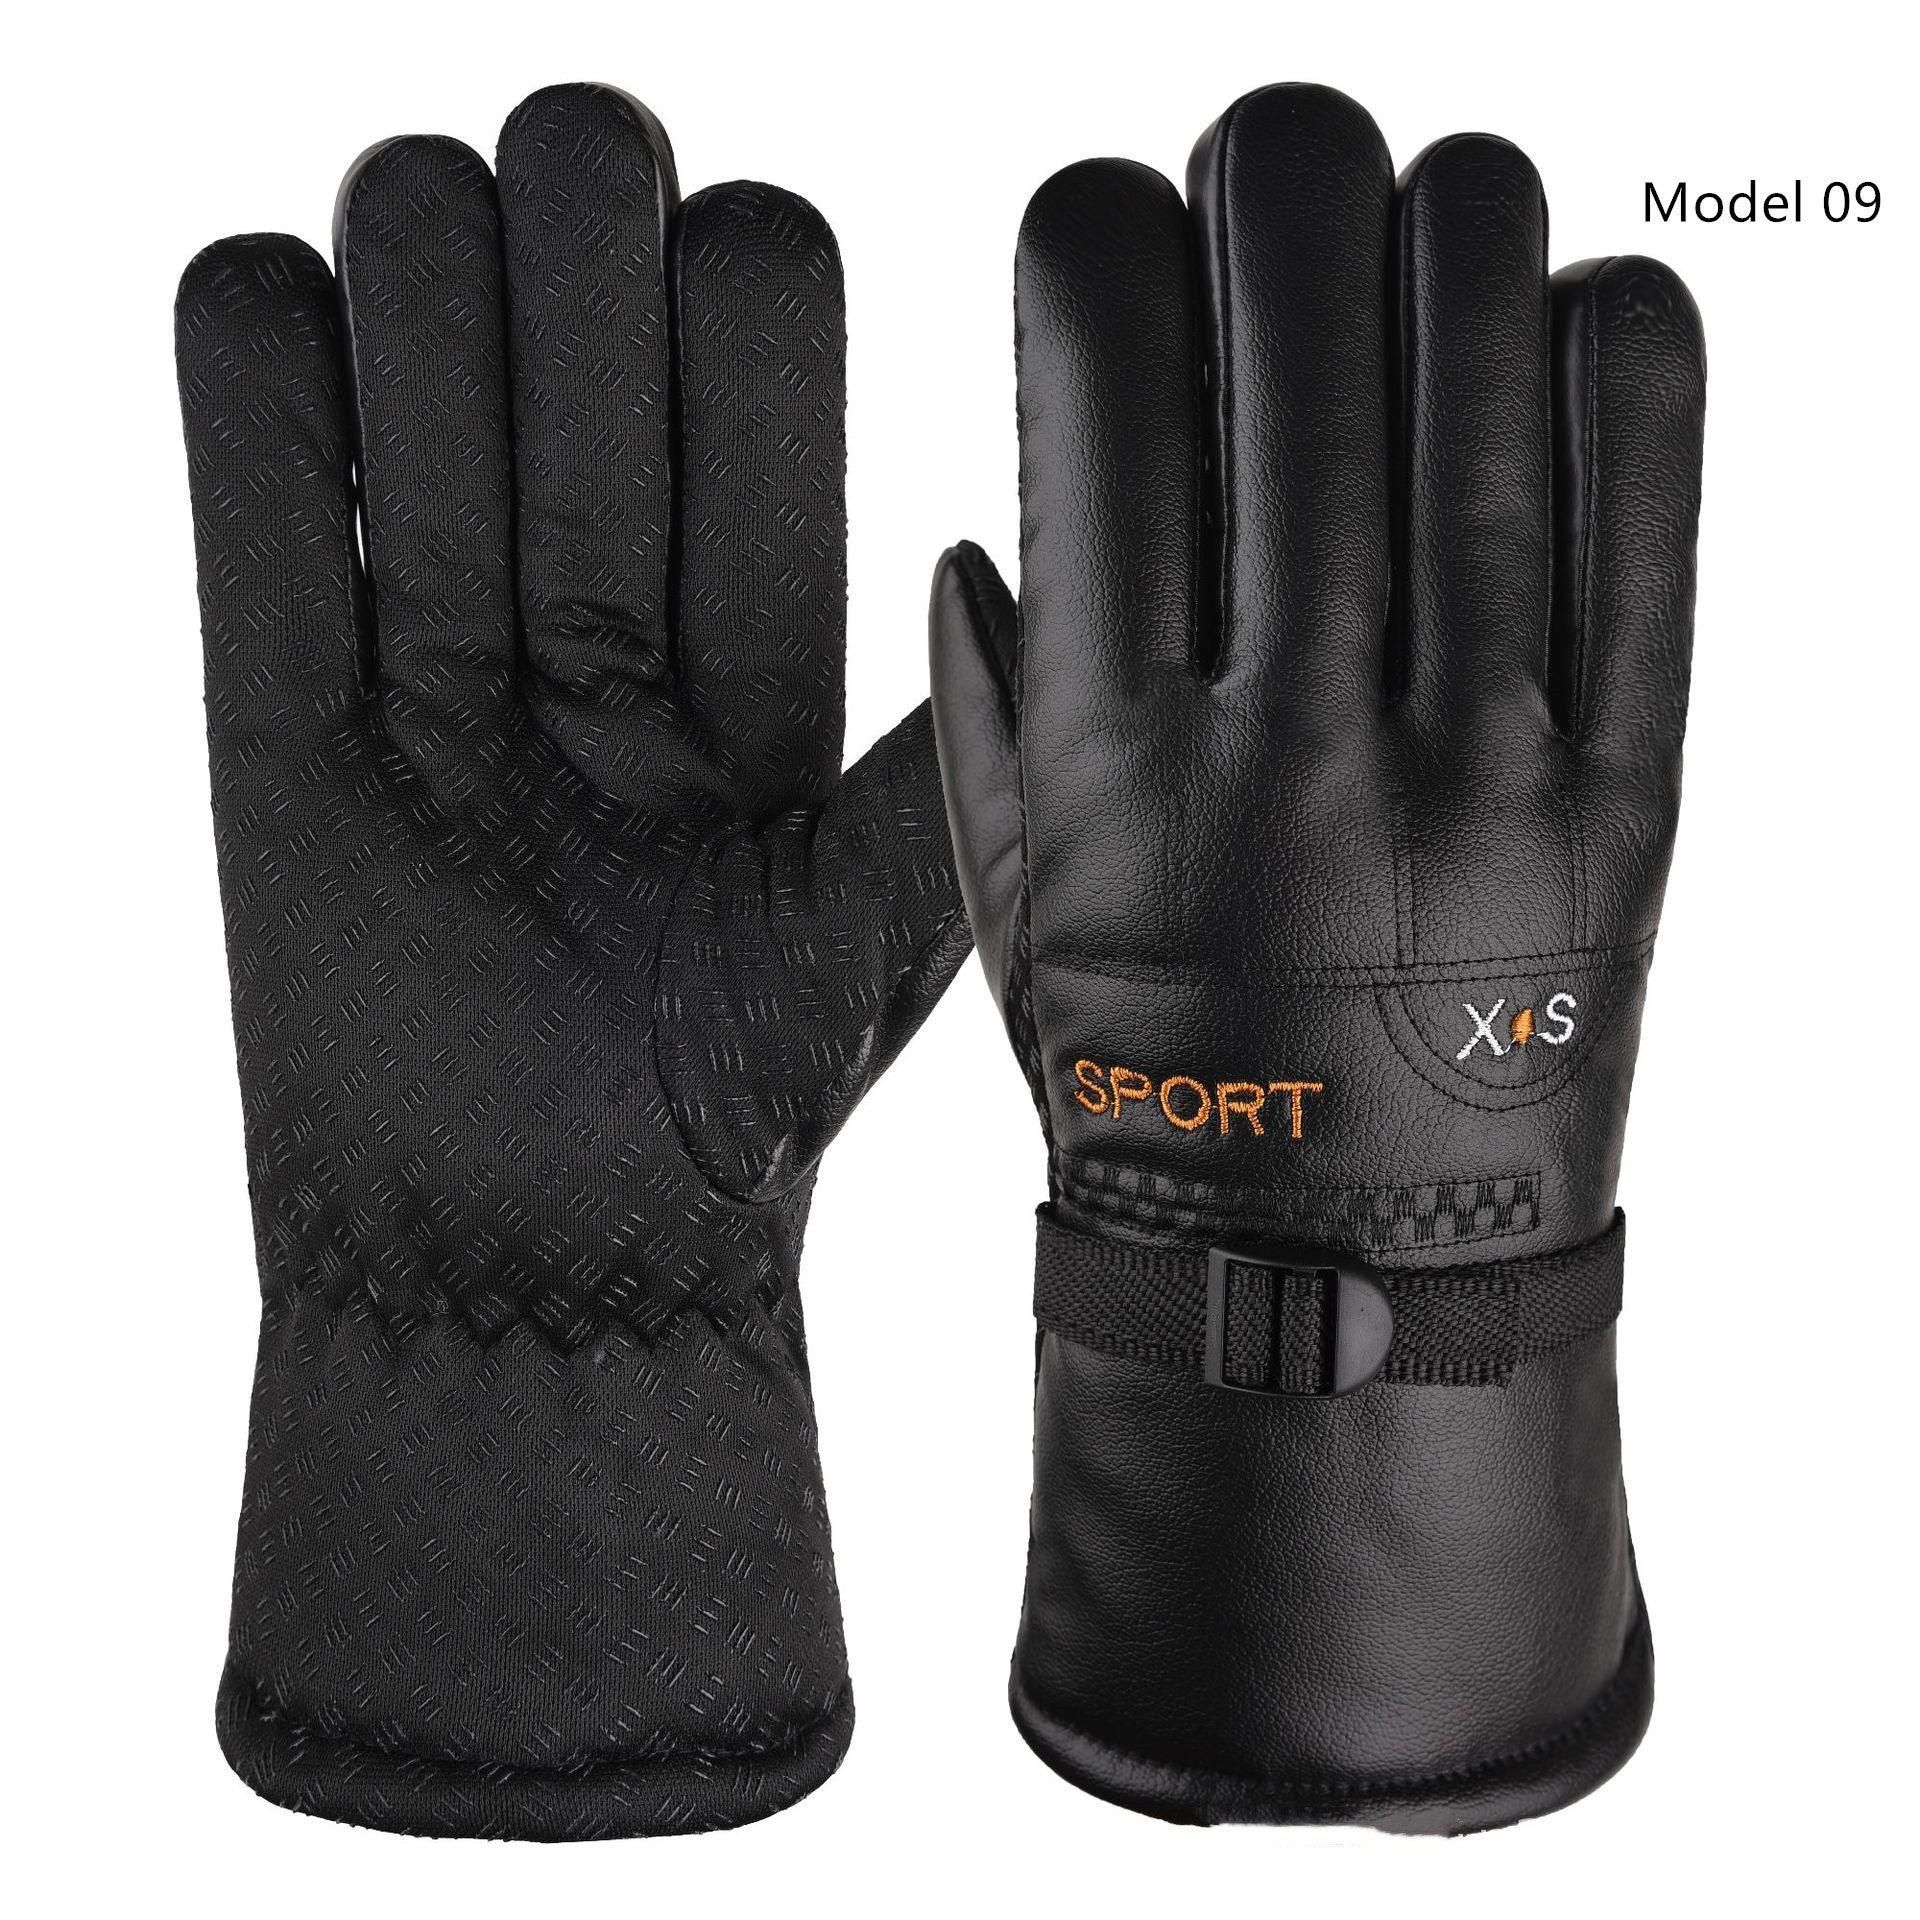 Men's Non-slip Warm Waterproof Gloves - Nioor